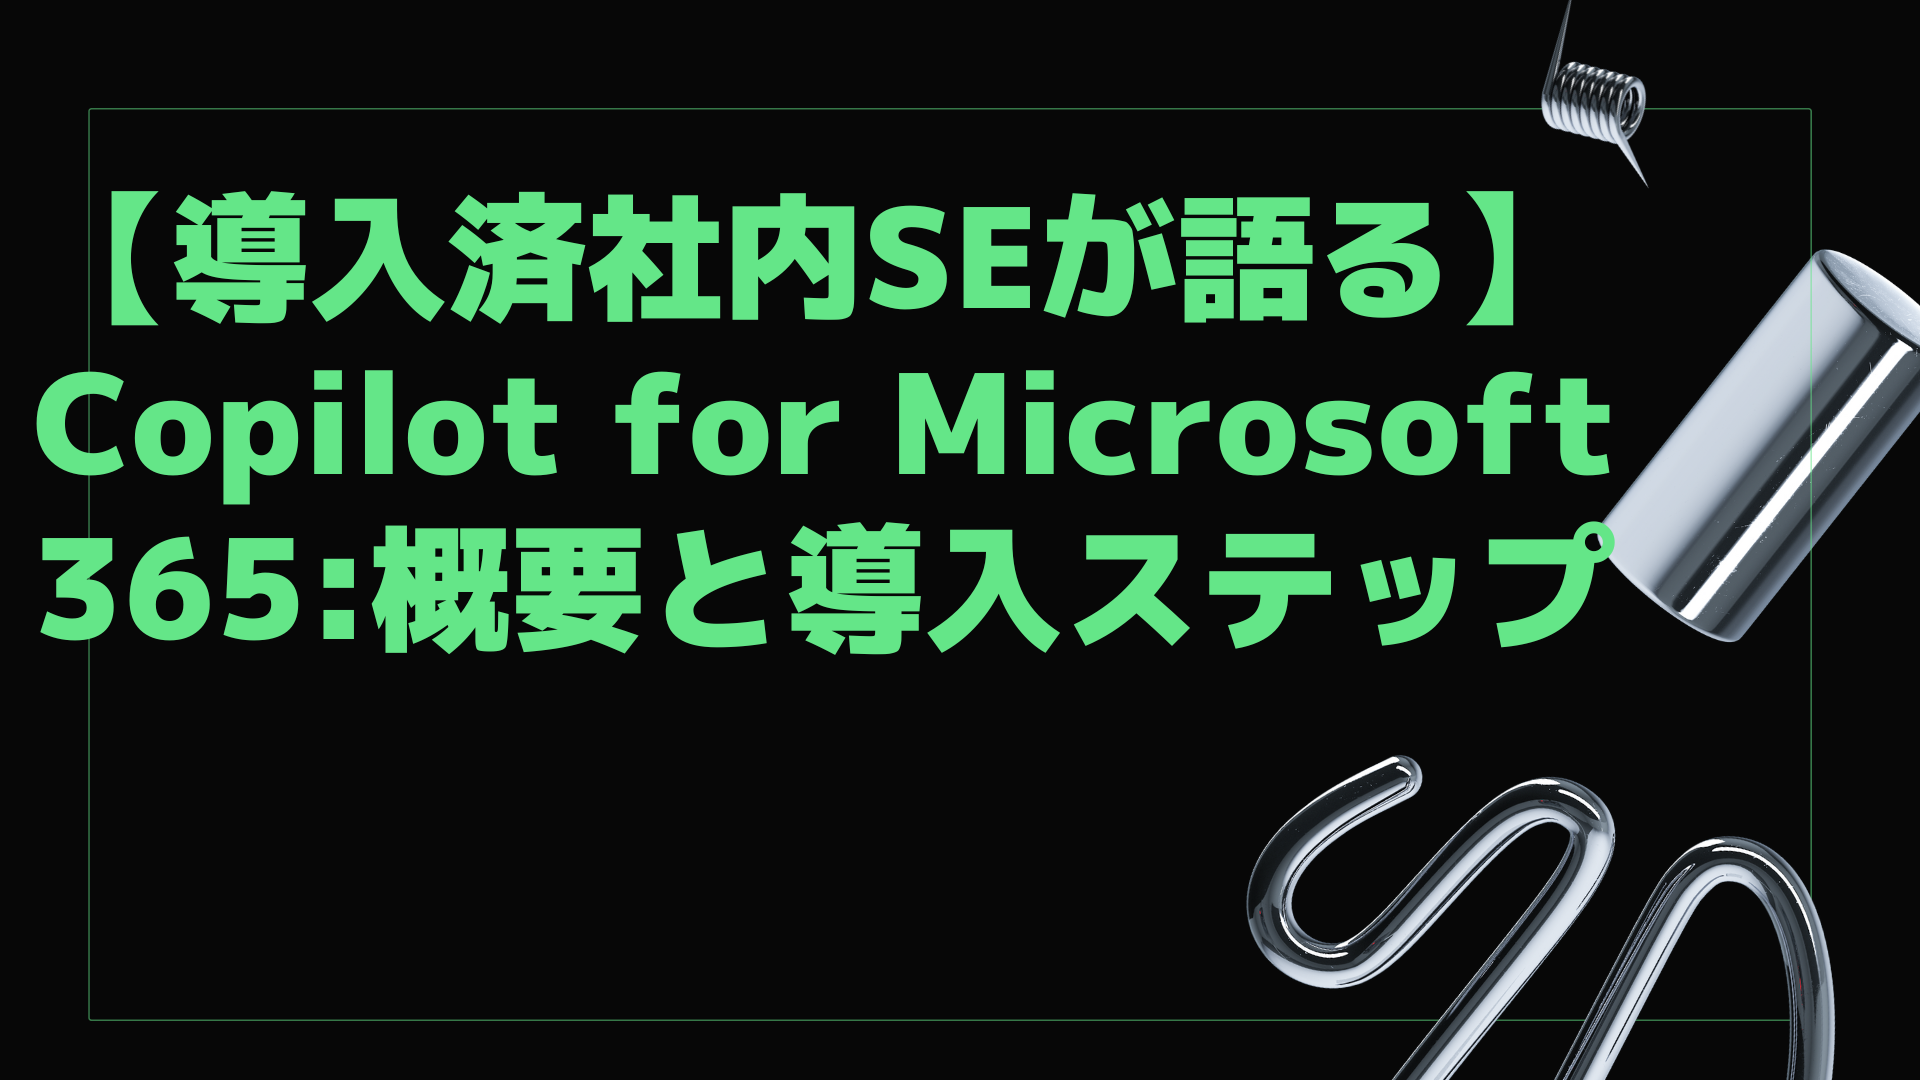 【導入済社内SEが語る】Copilot for Microsoft 365:概要と導入ステップ